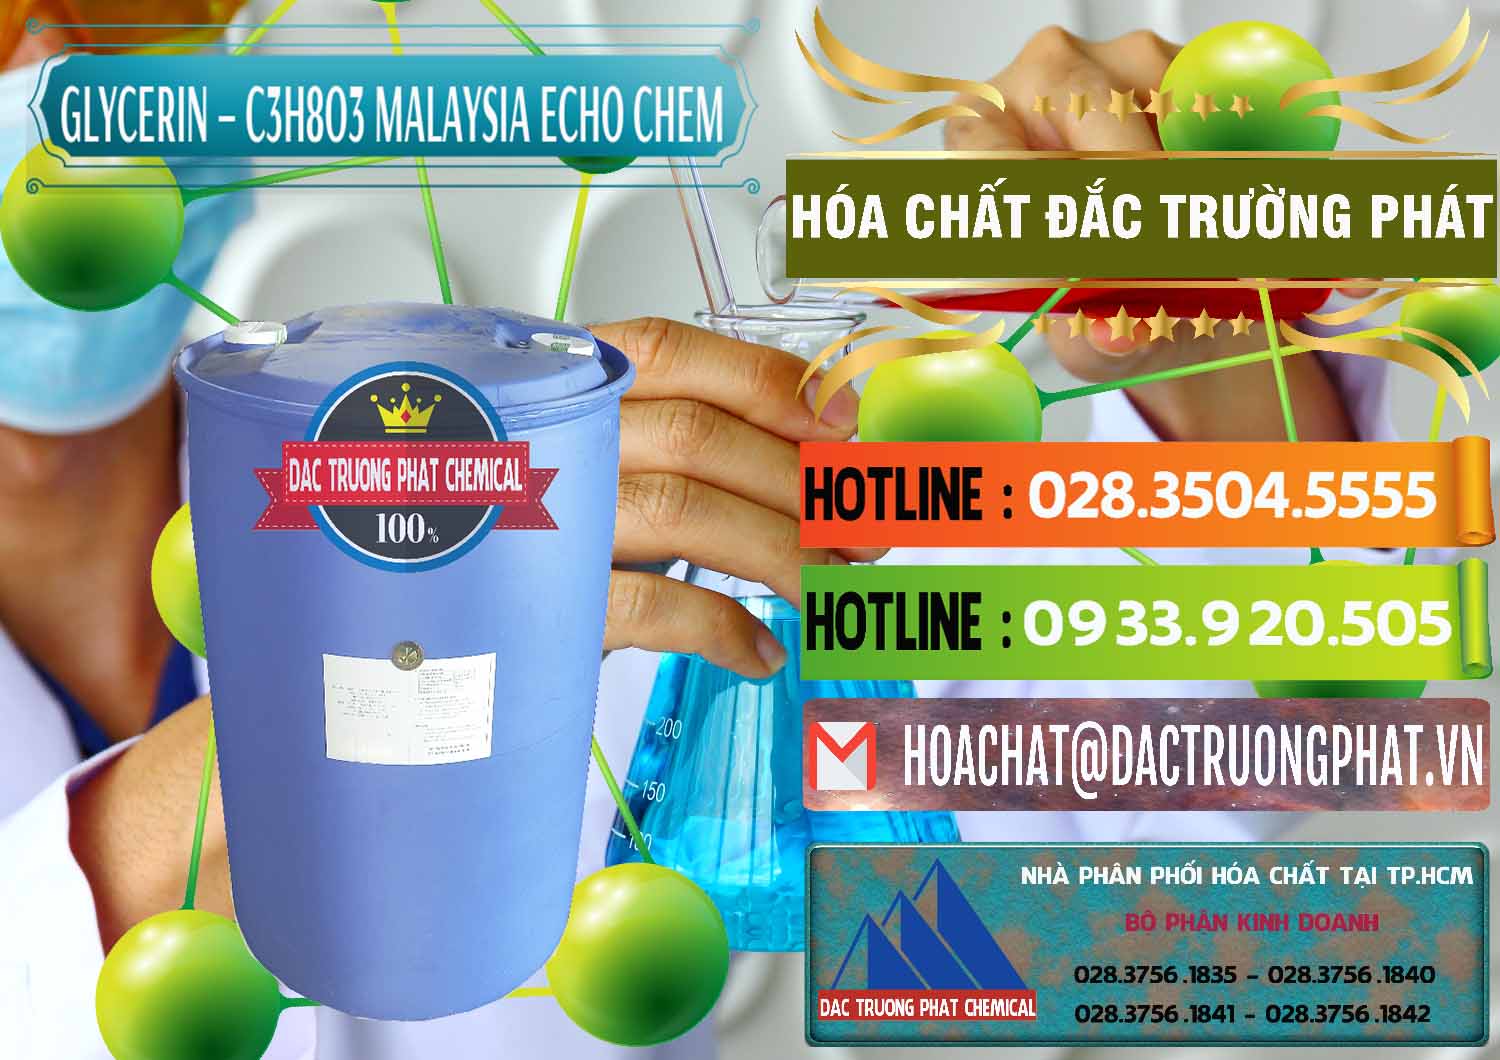 Nơi phân phối & bán Glycerin – C3H8O3 99.7% Echo Chem Malaysia - 0273 - Nơi cung cấp _ phân phối hóa chất tại TP.HCM - cungcaphoachat.com.vn